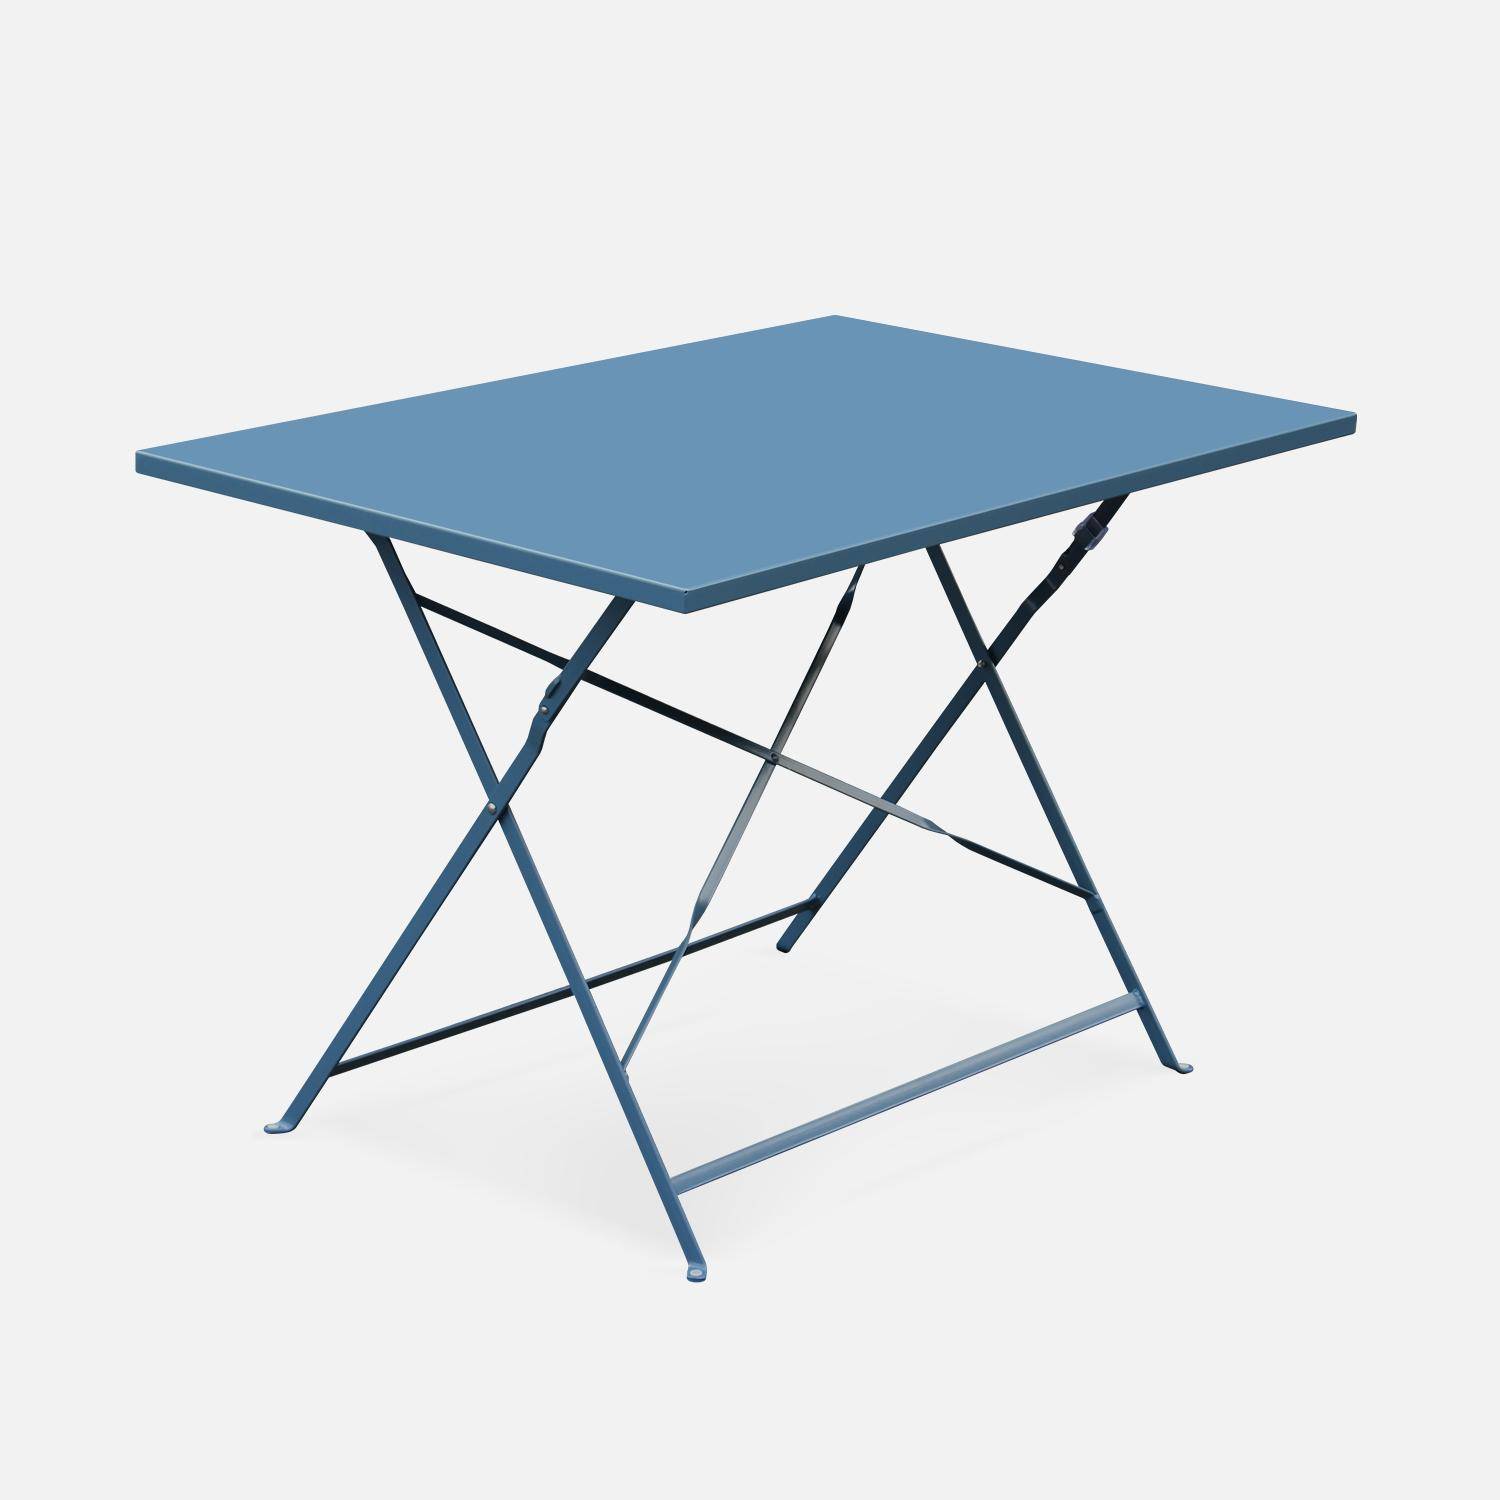 Salotto da giardino, bistrot, pieghevole - modello: Emilia, rettangolare, colore: Blu ombreggiato - Tavolo, dimensioni: 110x70cm, con quattro sedie pieghevoli, acciaio termolaccato,sweeek,Photo3